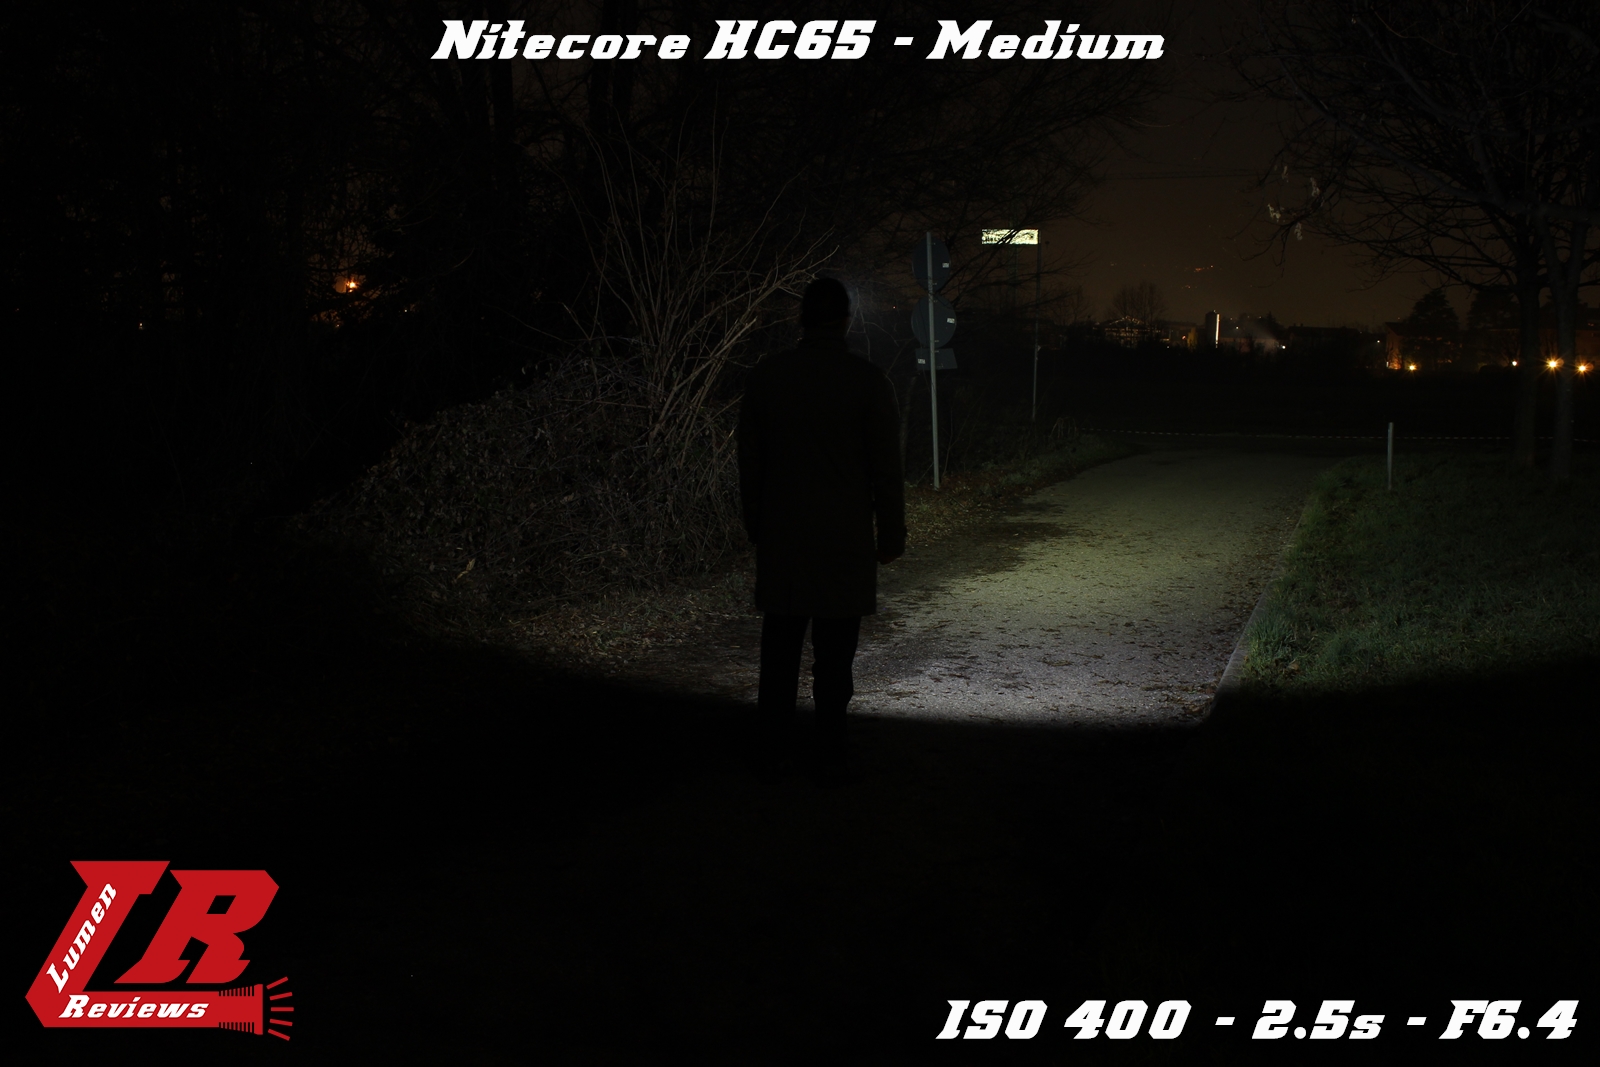 Nitecore_HC65_33.jpg